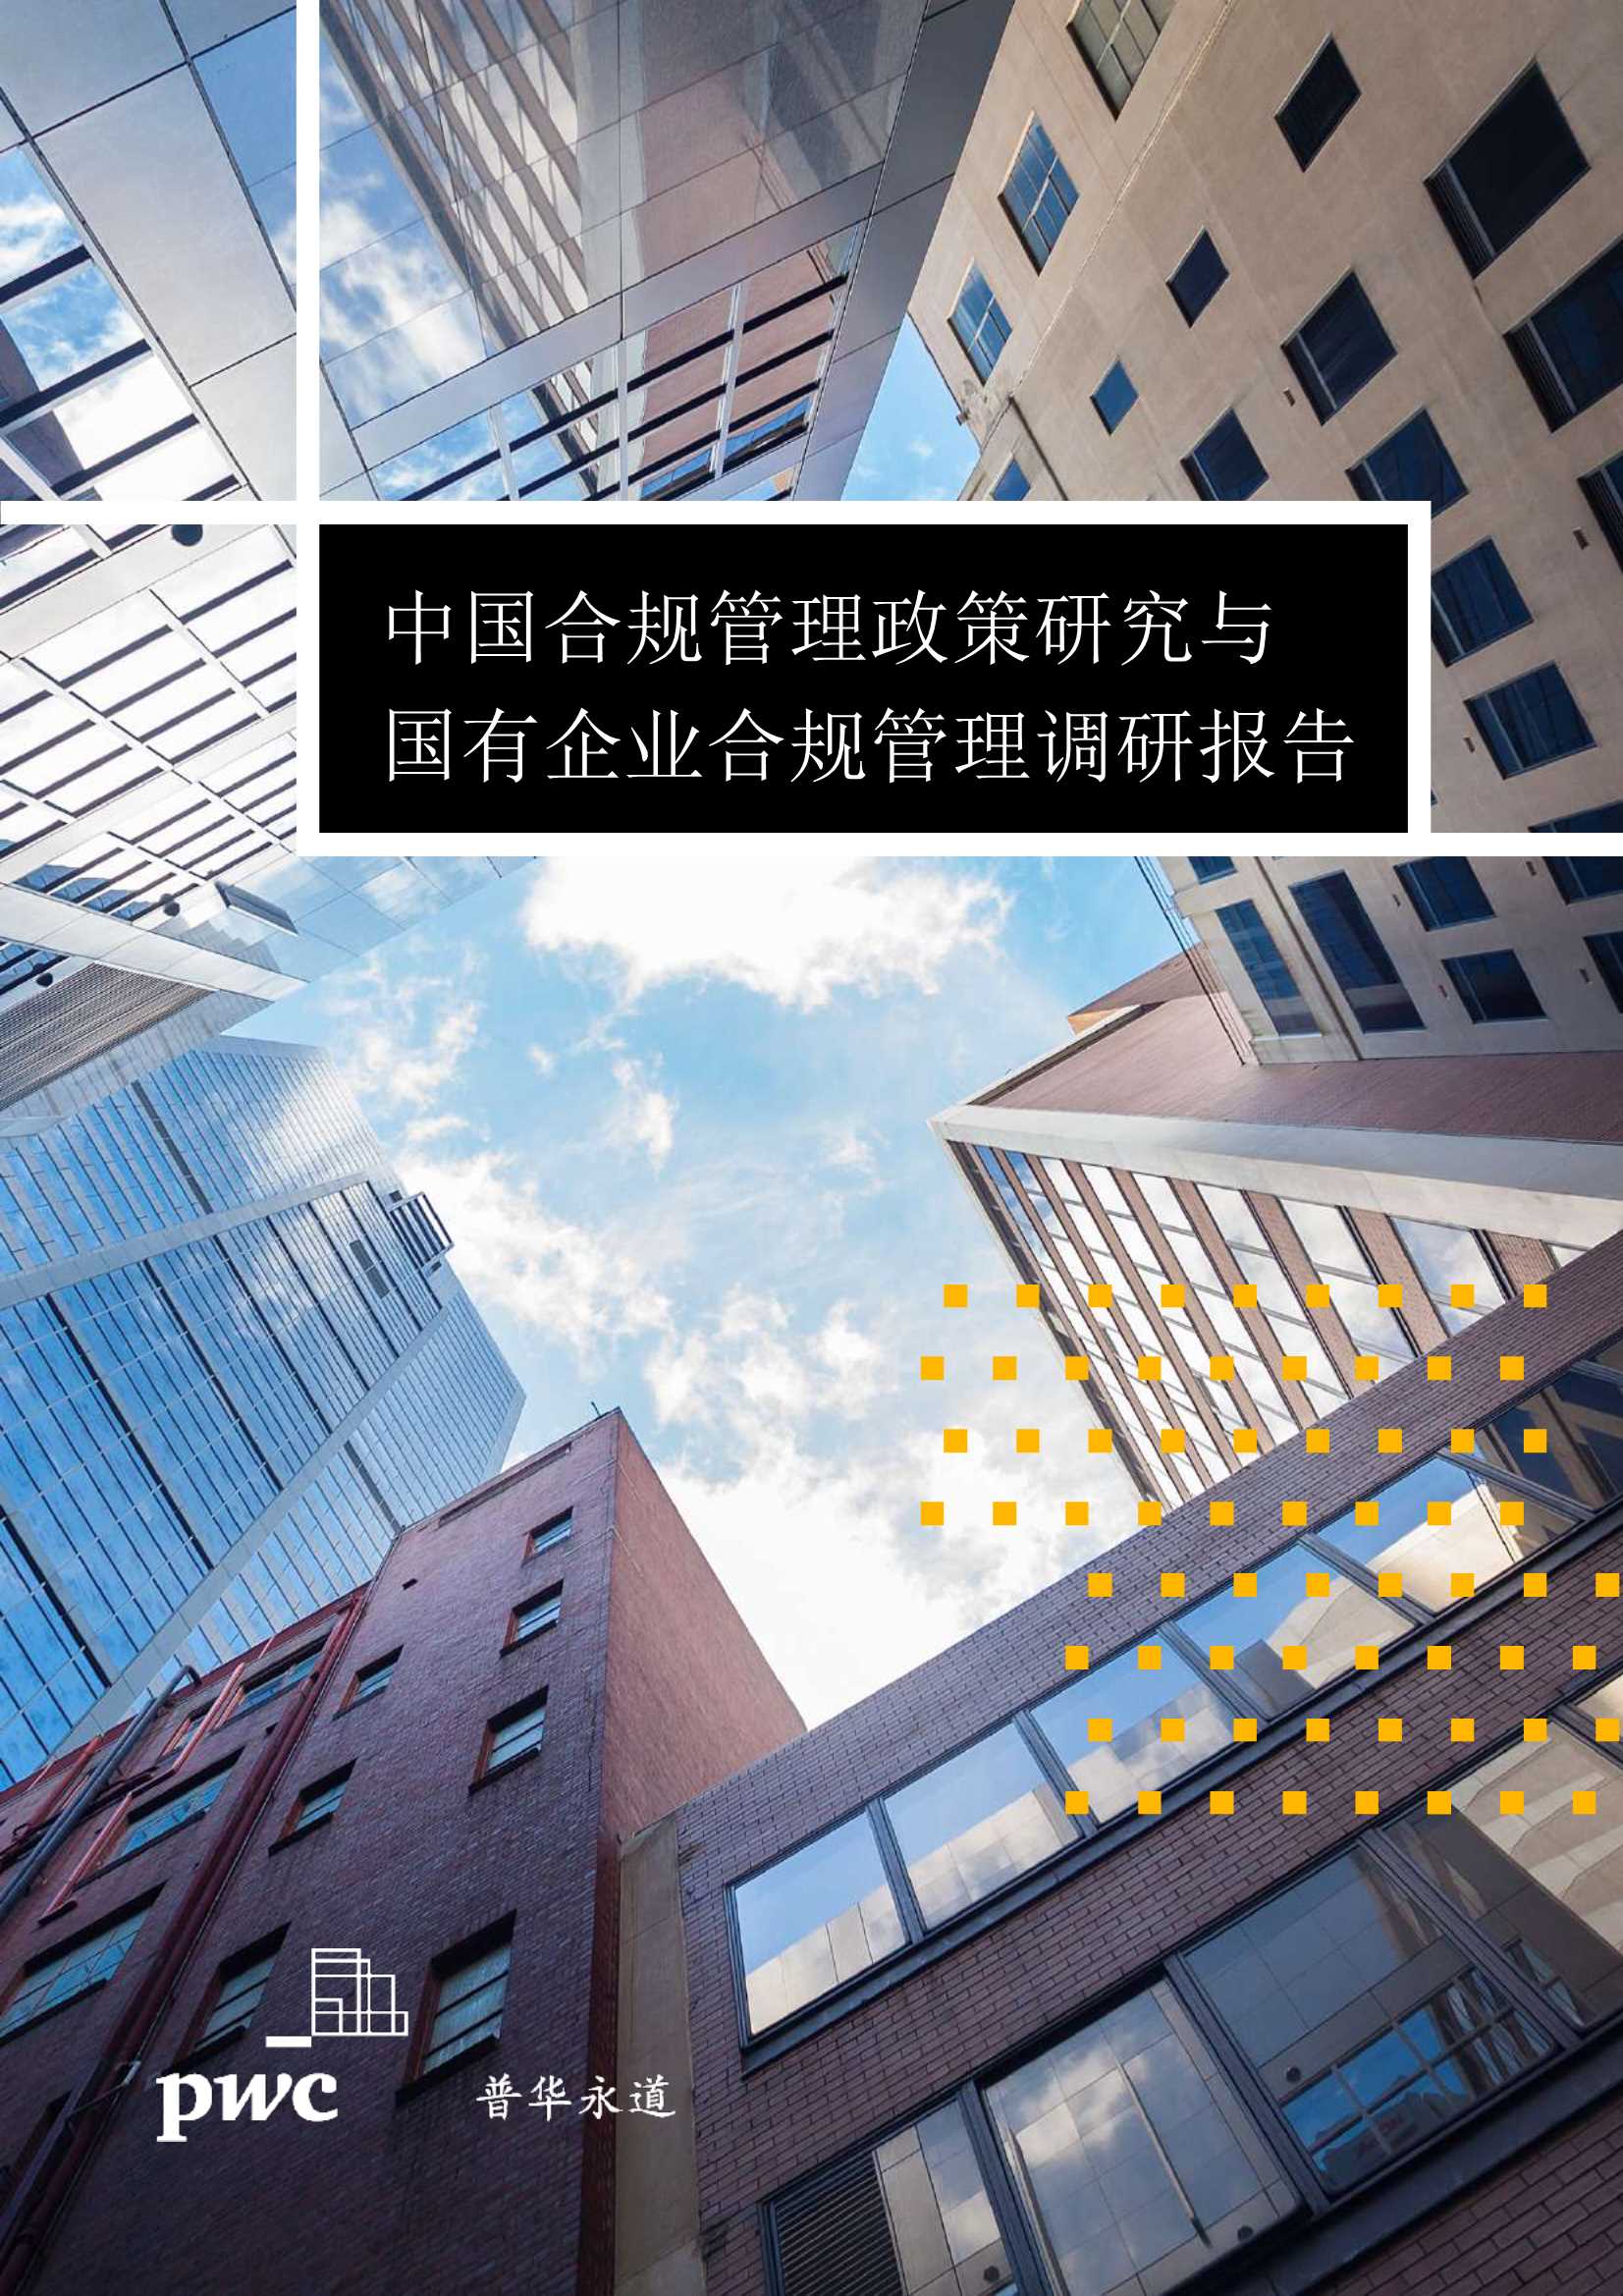 普华永道-中国合规管理政策研究与国有企业合规管理调研报告-2021.11-20页